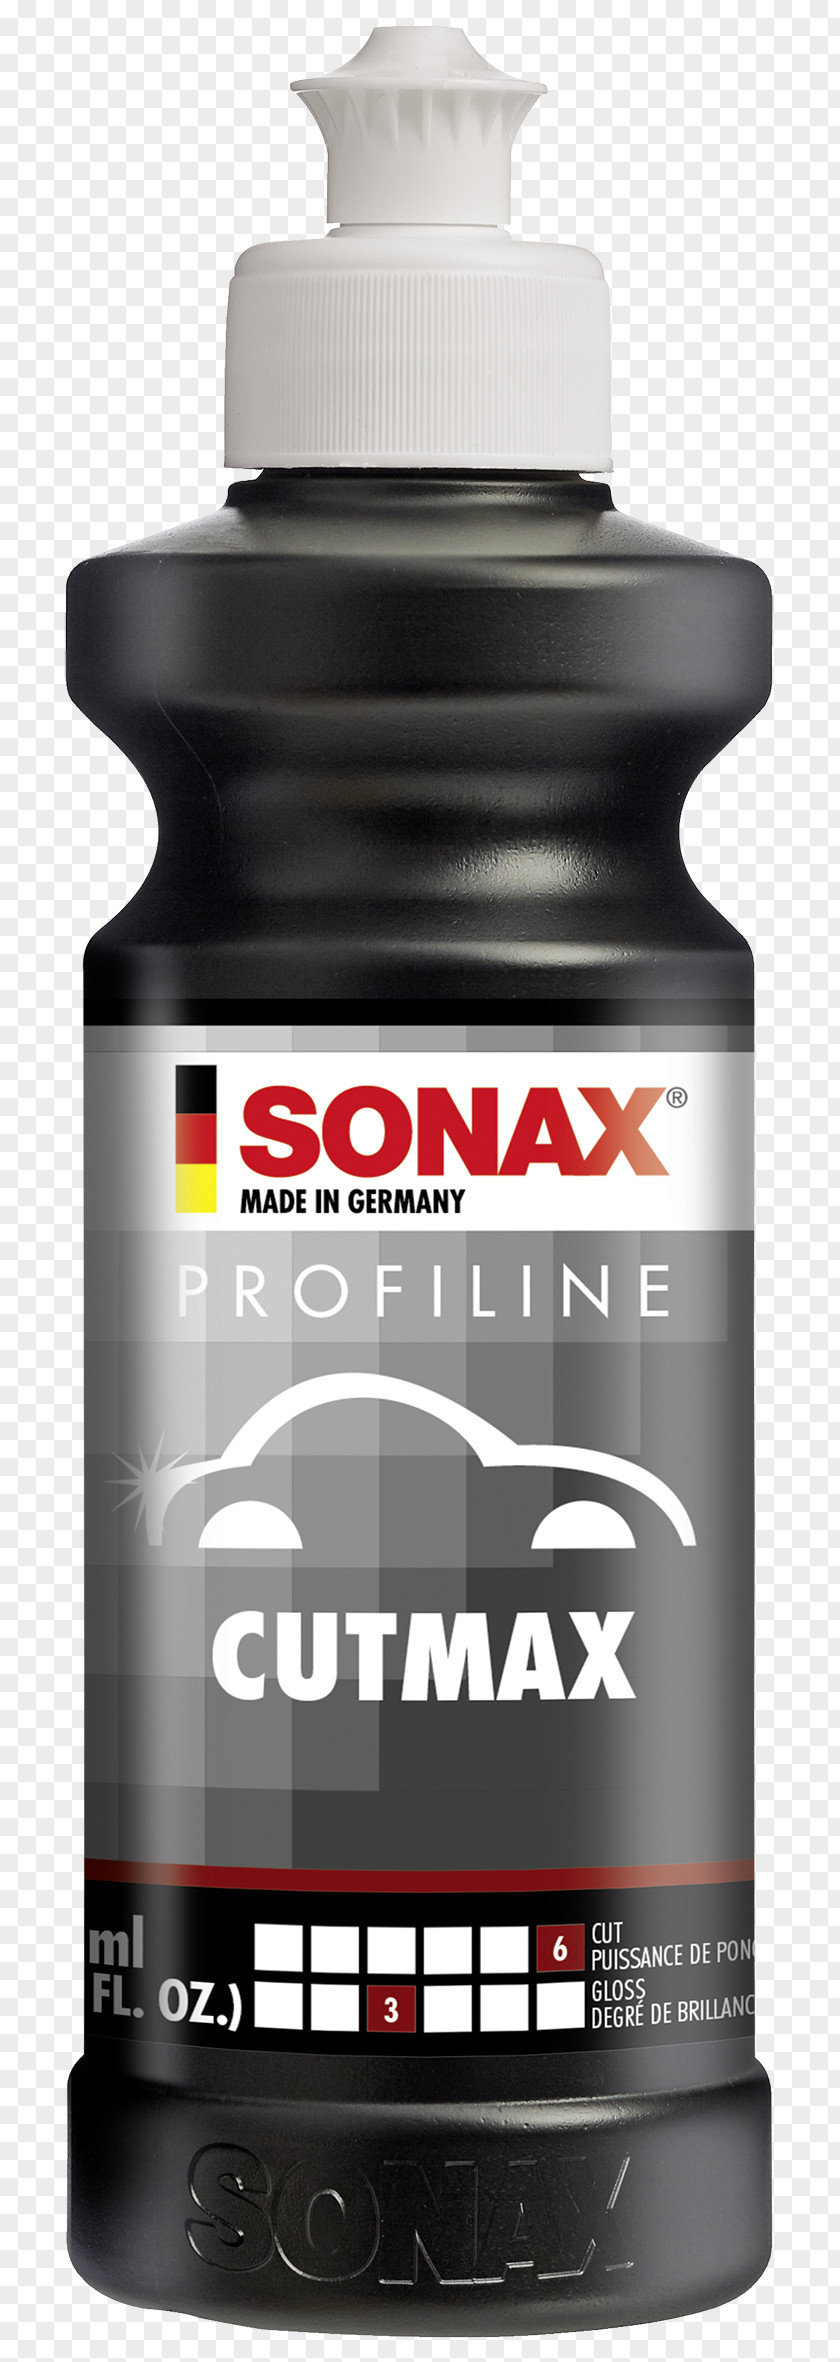 Mobile Search Box Sonax 224141 Profiline Perfect Finish Car Polish CUTMAX 02465000 ProfiLine Nano 02083000 PNG